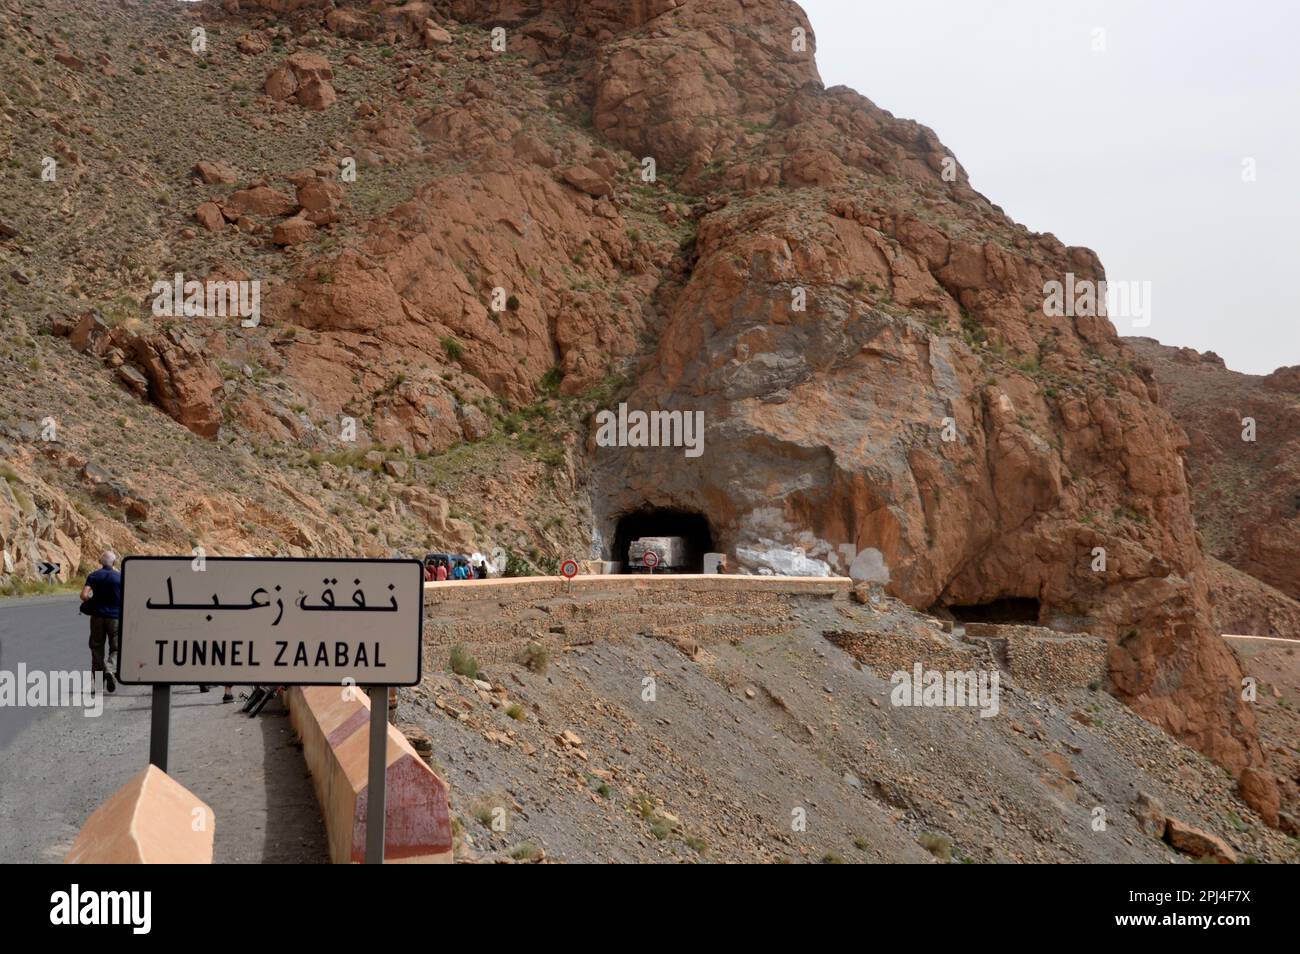 Marocco, montagne dell'Atlante medio: Il tunnel Zaabal nel canyon del fiume Ziz è stato attaccato dalla roccia dai legionari francesi senza l'uso di alcuna specifica Foto Stock